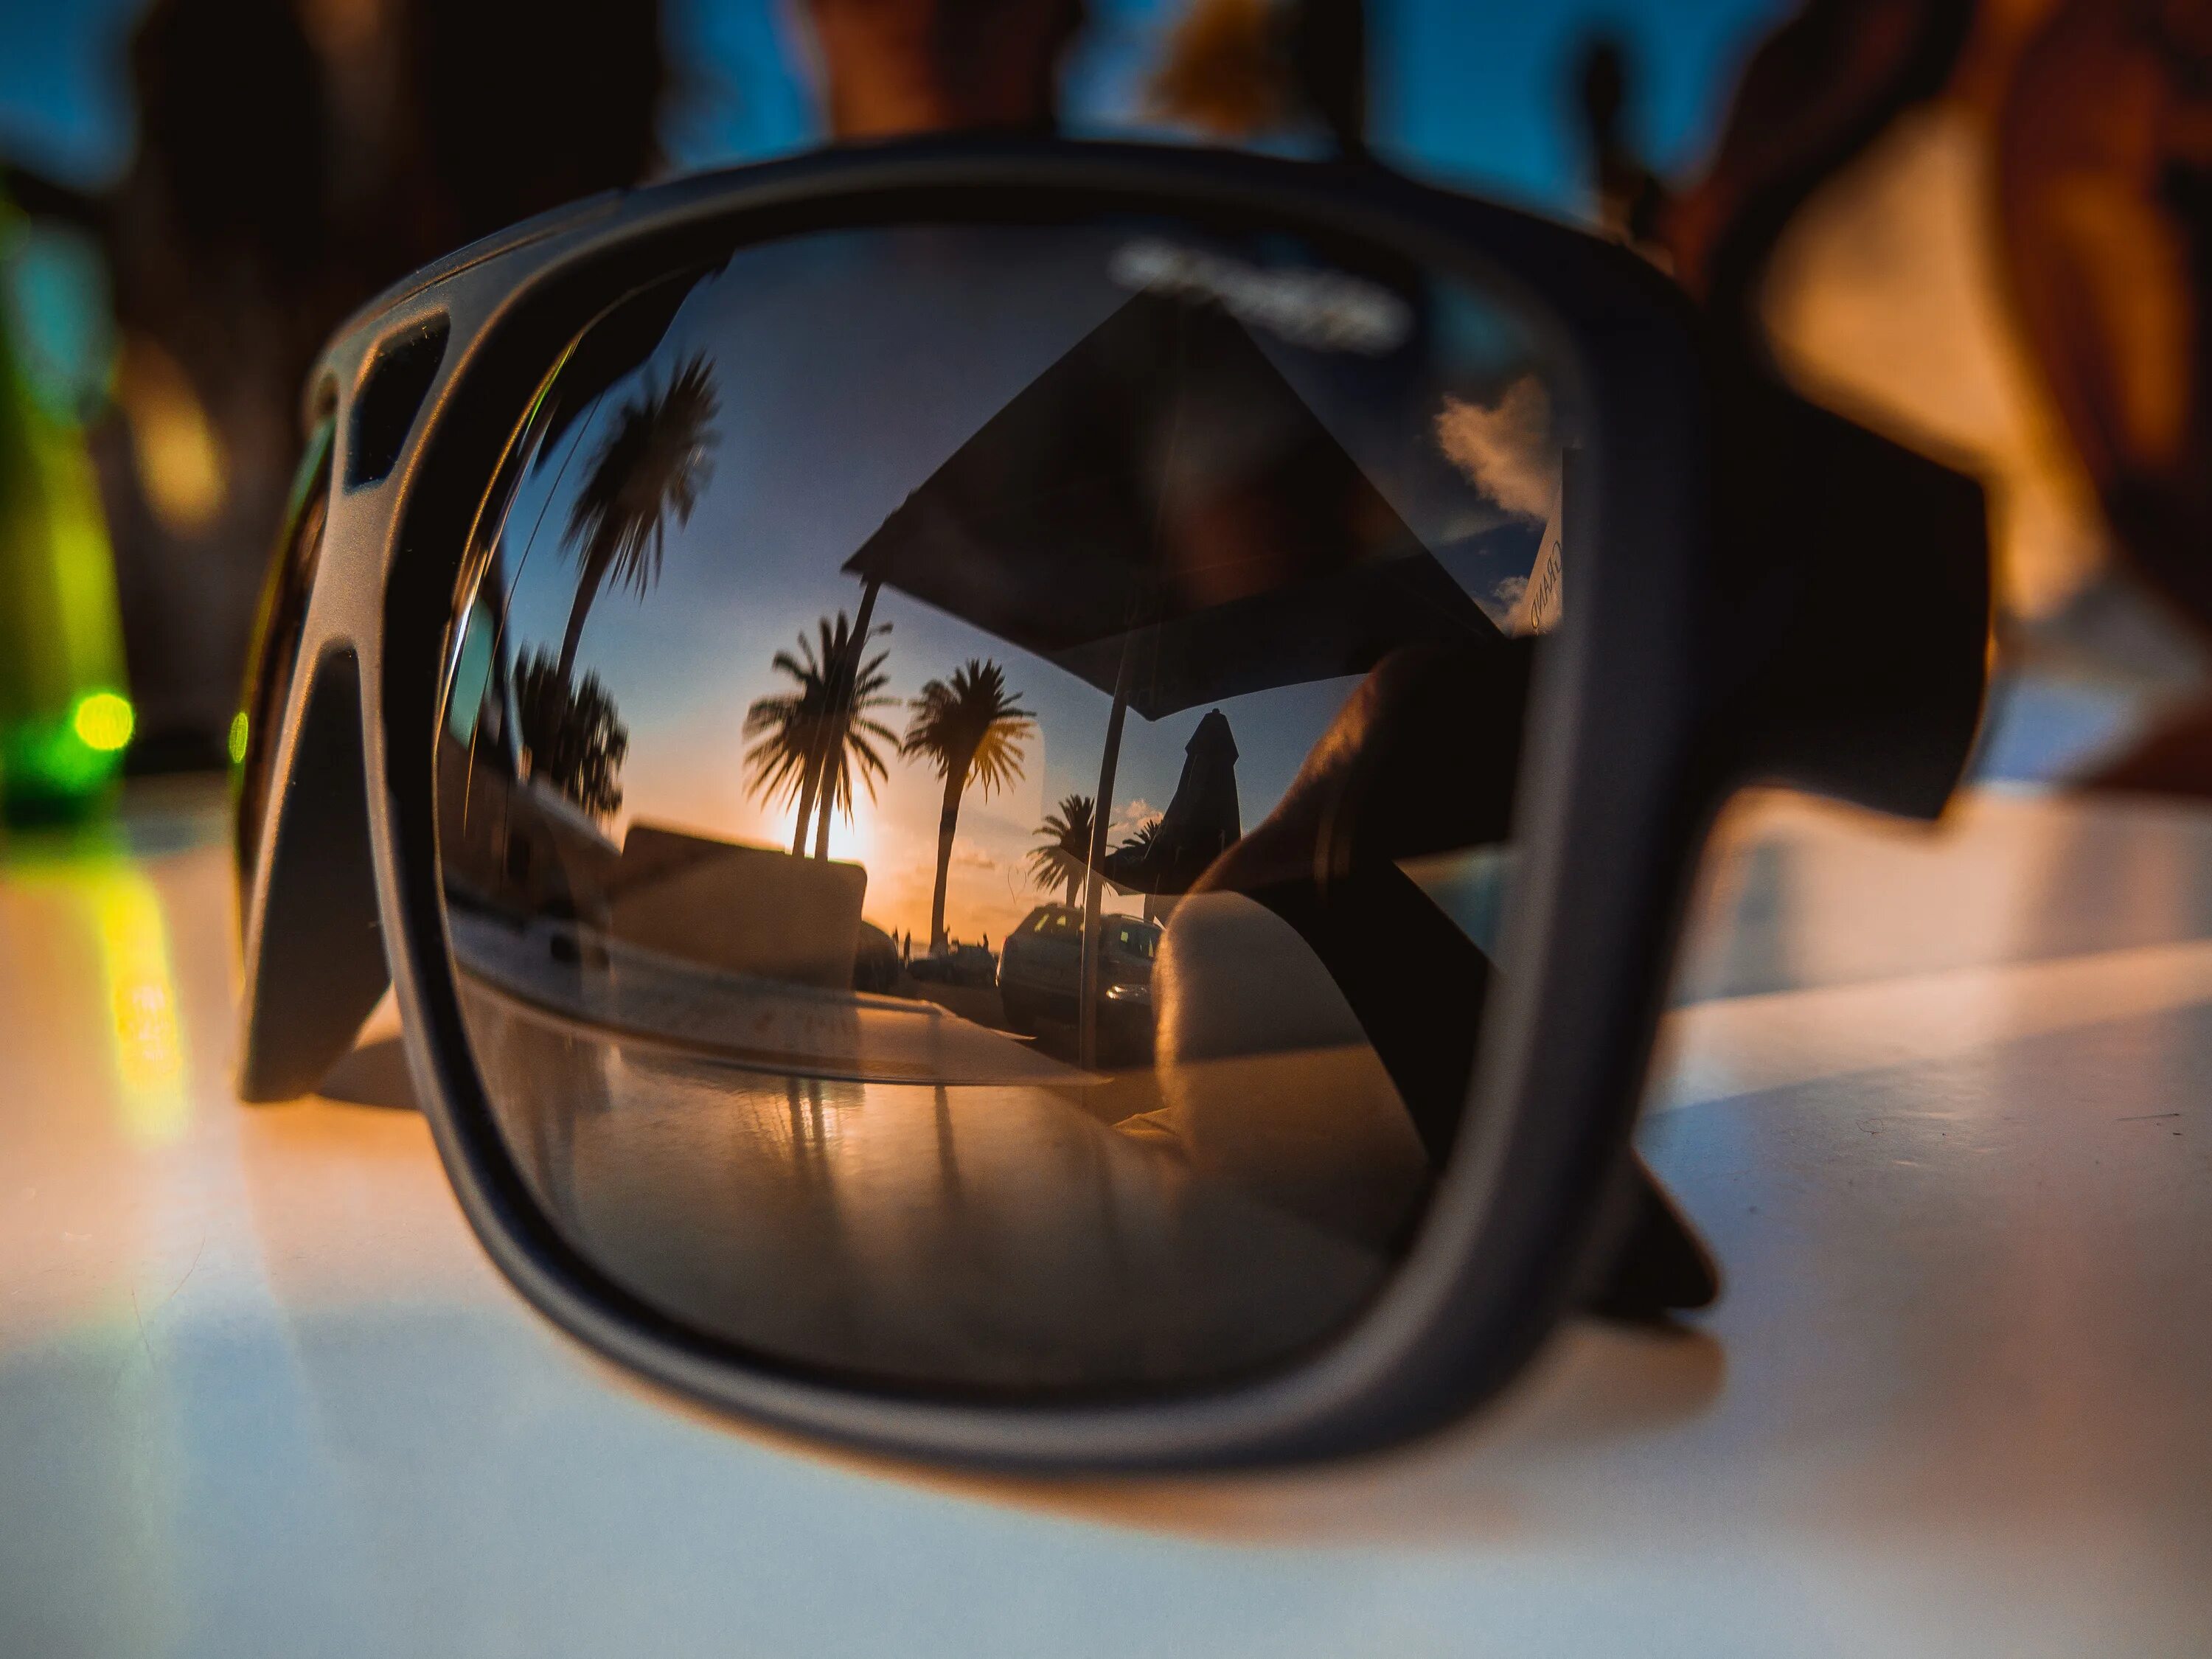 Отражение в очках. Отражение в солнечных очках. Солнцезащитные очки с отражением. Море в отражении очков.